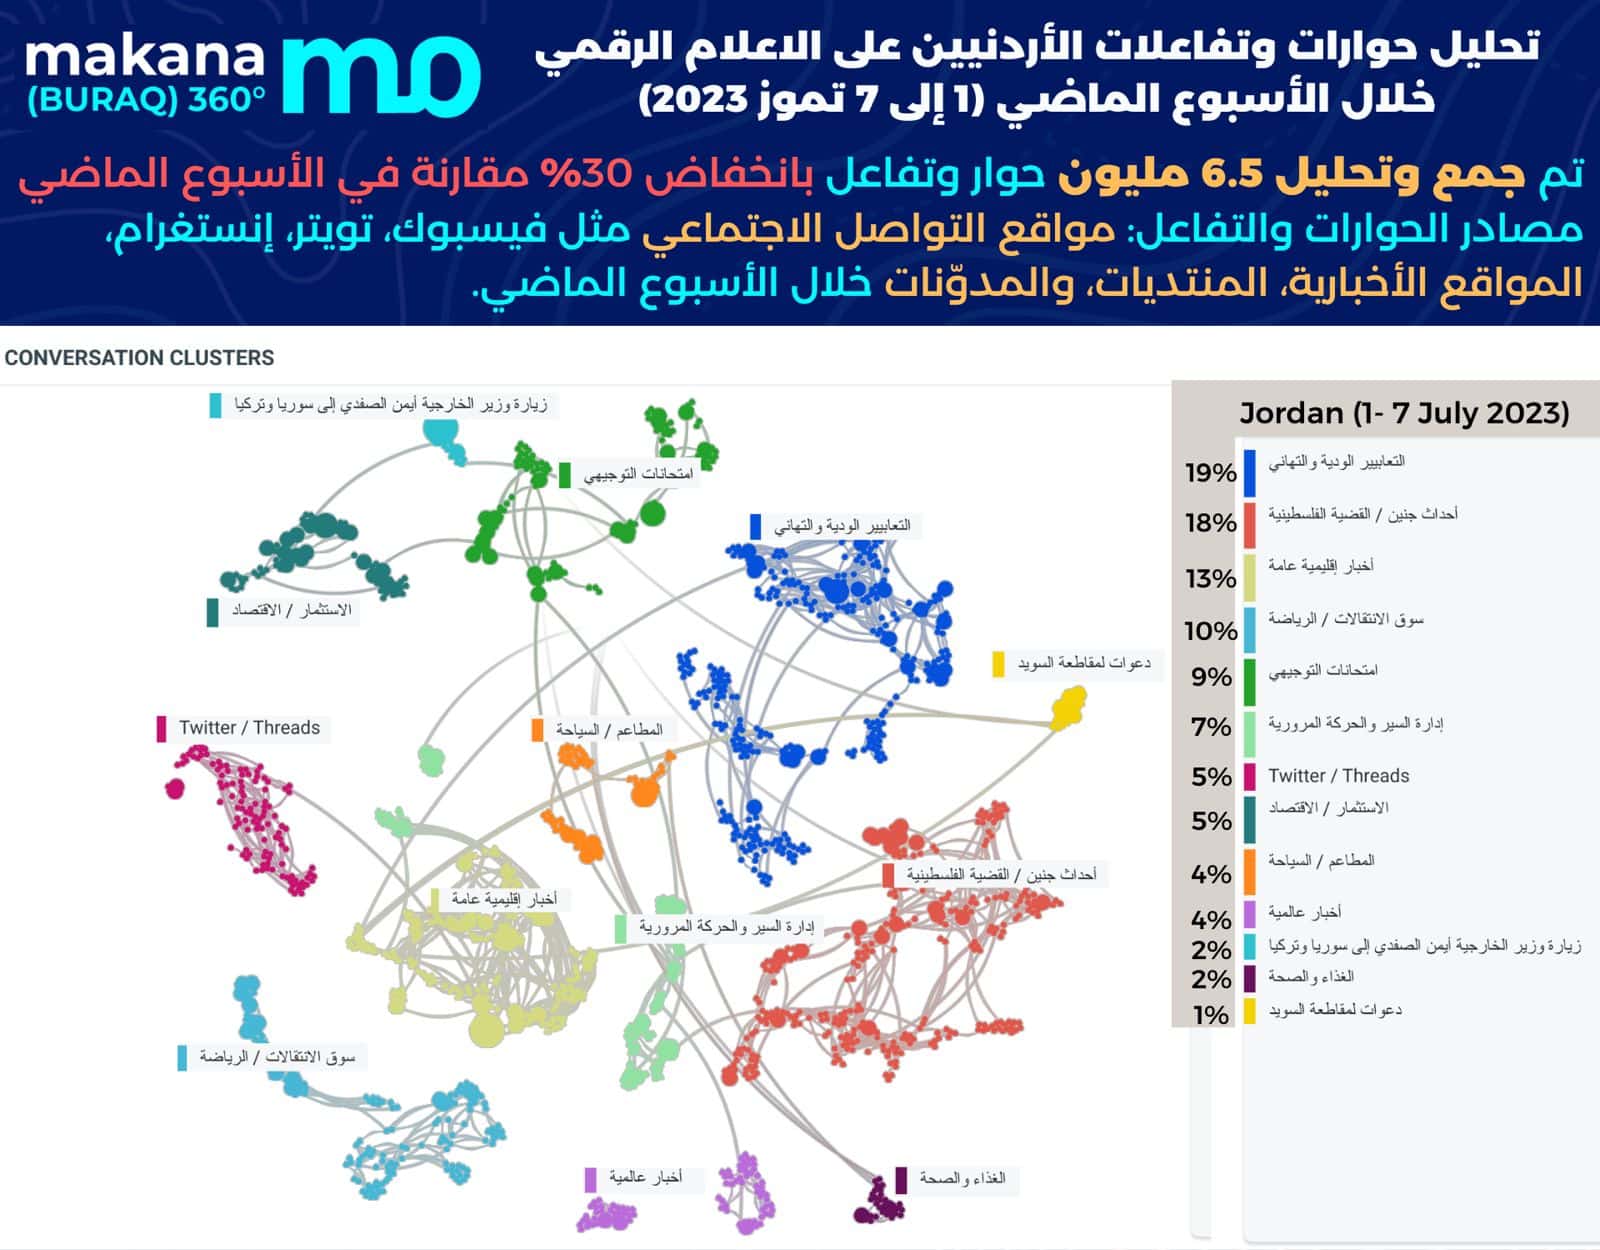 تحليل حوارات وتفاعلات الأردنيين على الاعلام الرقمي: 1-7 تموز2023